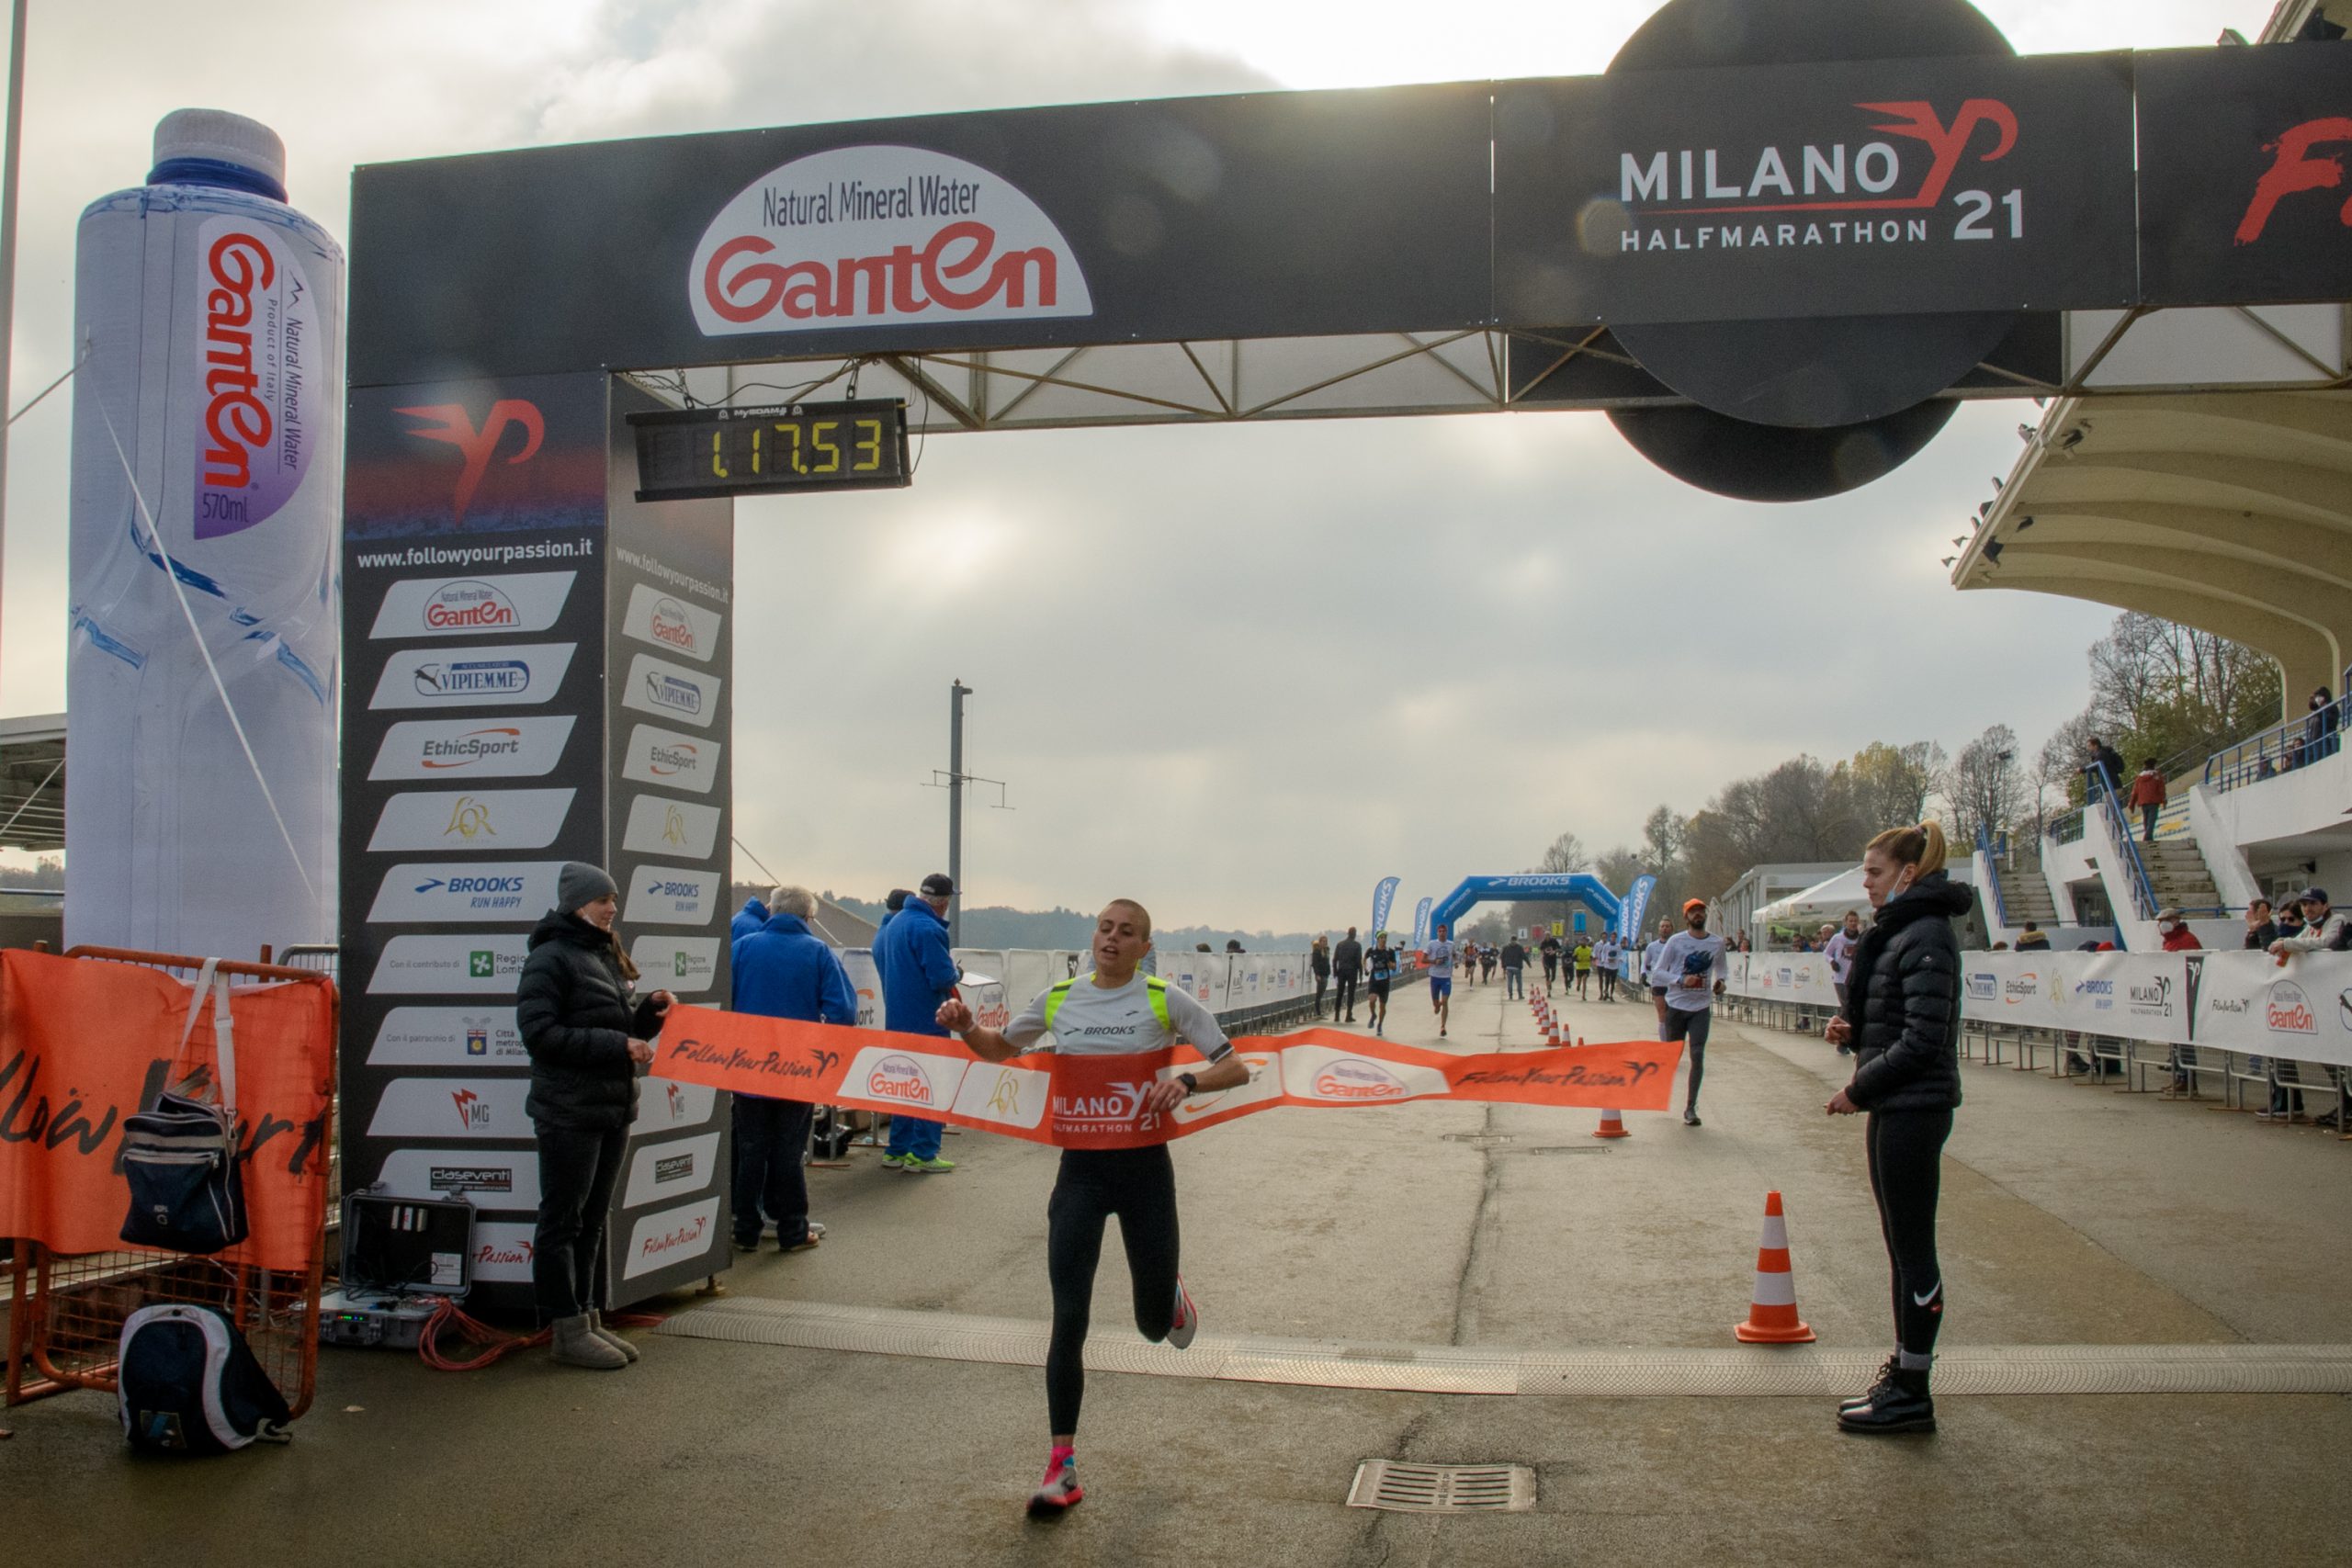 Nella foto di Diego Degiorgi, Fabiola Conti trionfante nella 21k dove ha dominato dal primo all'ultimo chilometro con una gran tattica di gara e variazioni di ritmo.